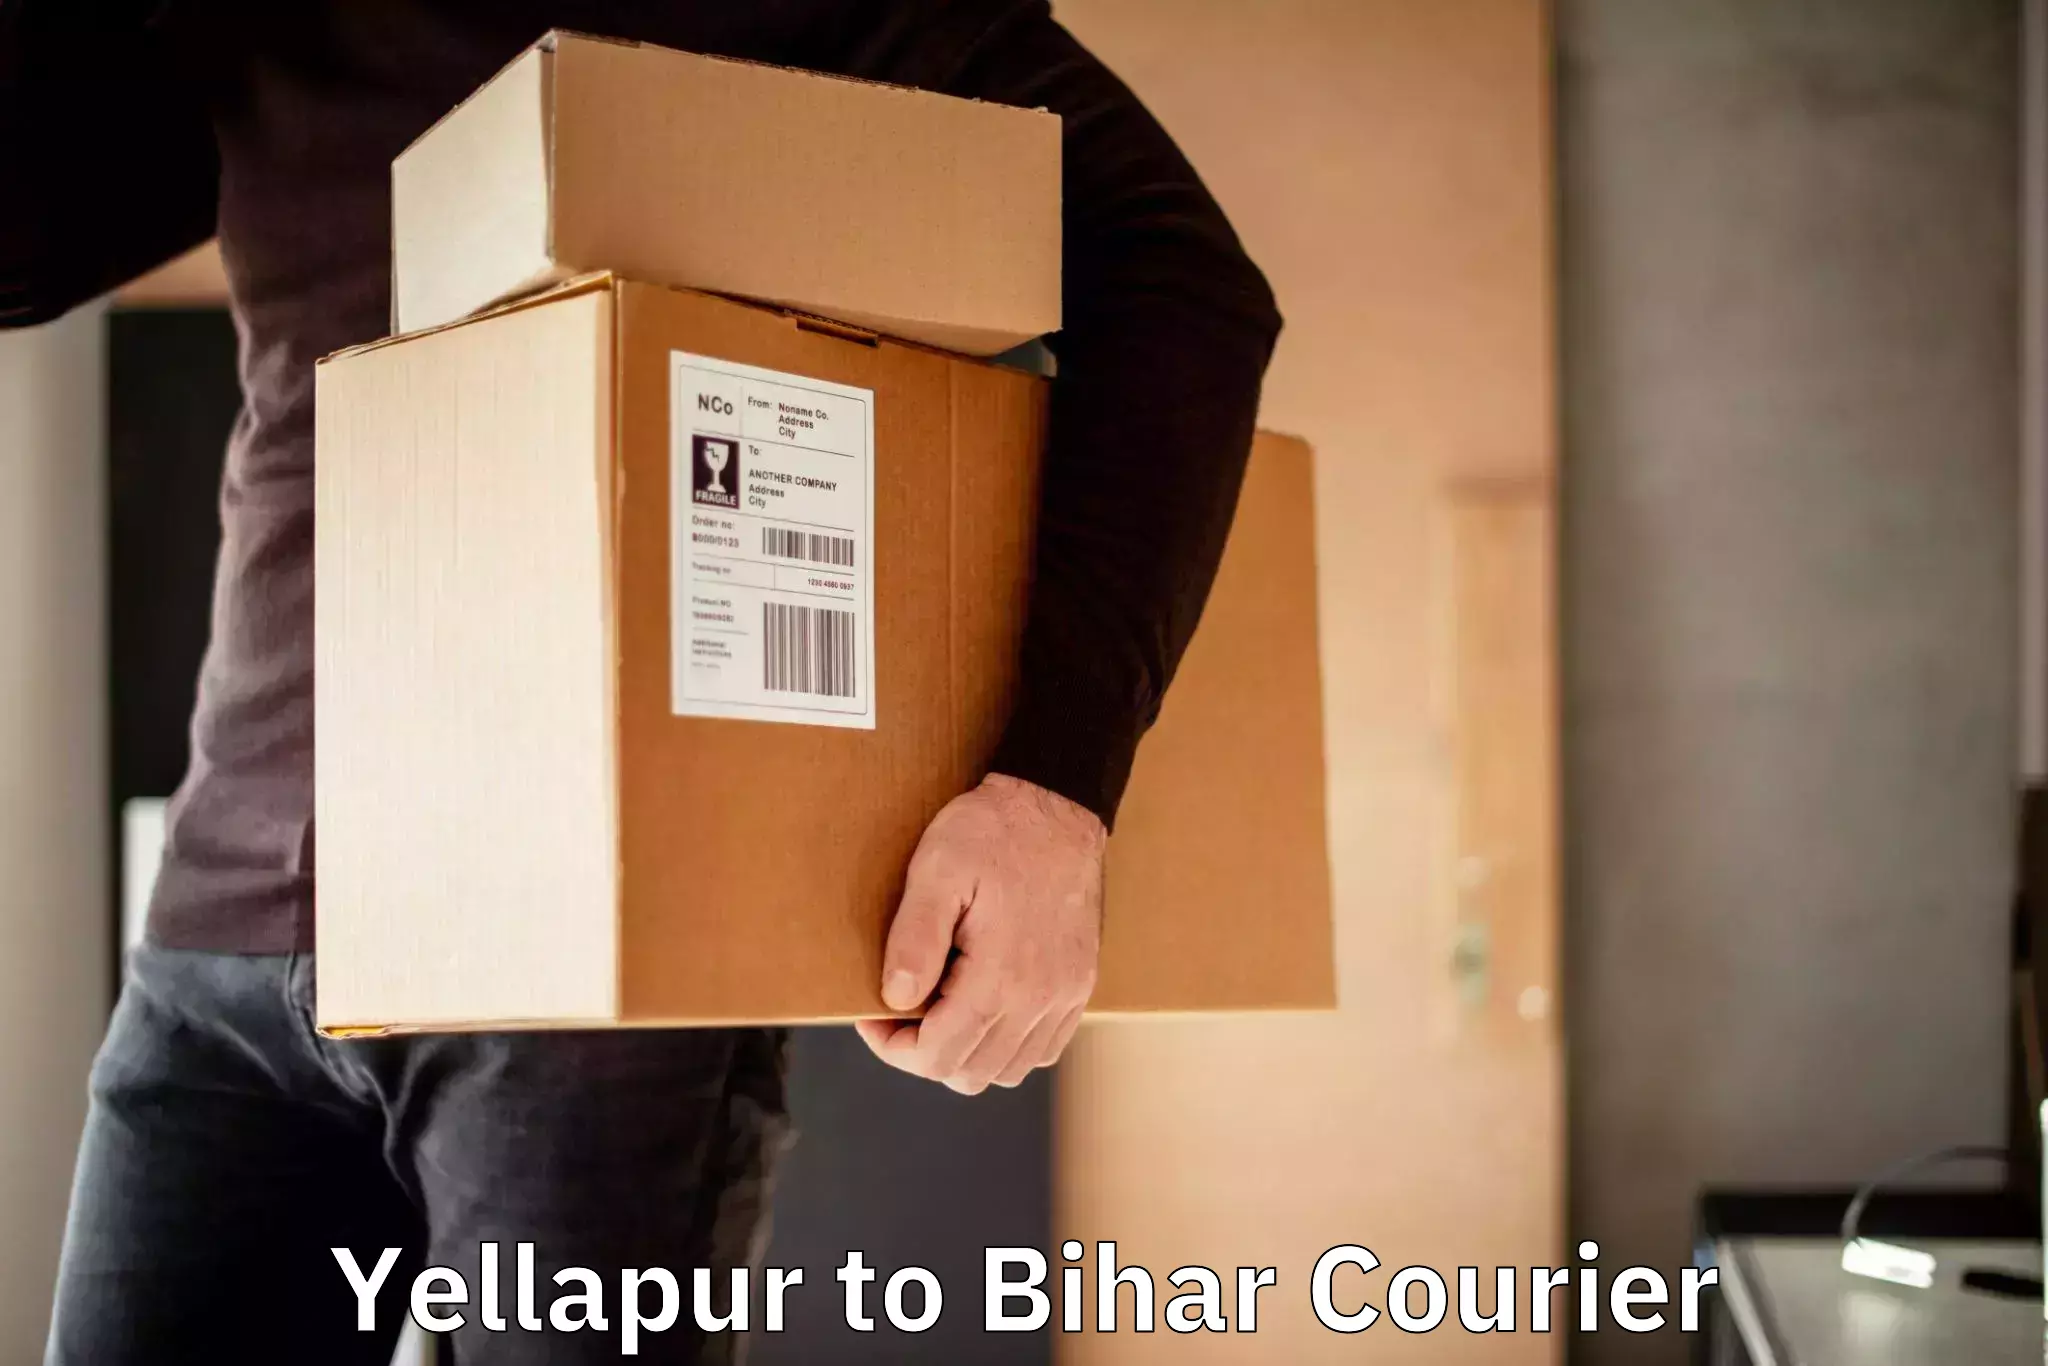 Efficient cargo services Yellapur to Pupri